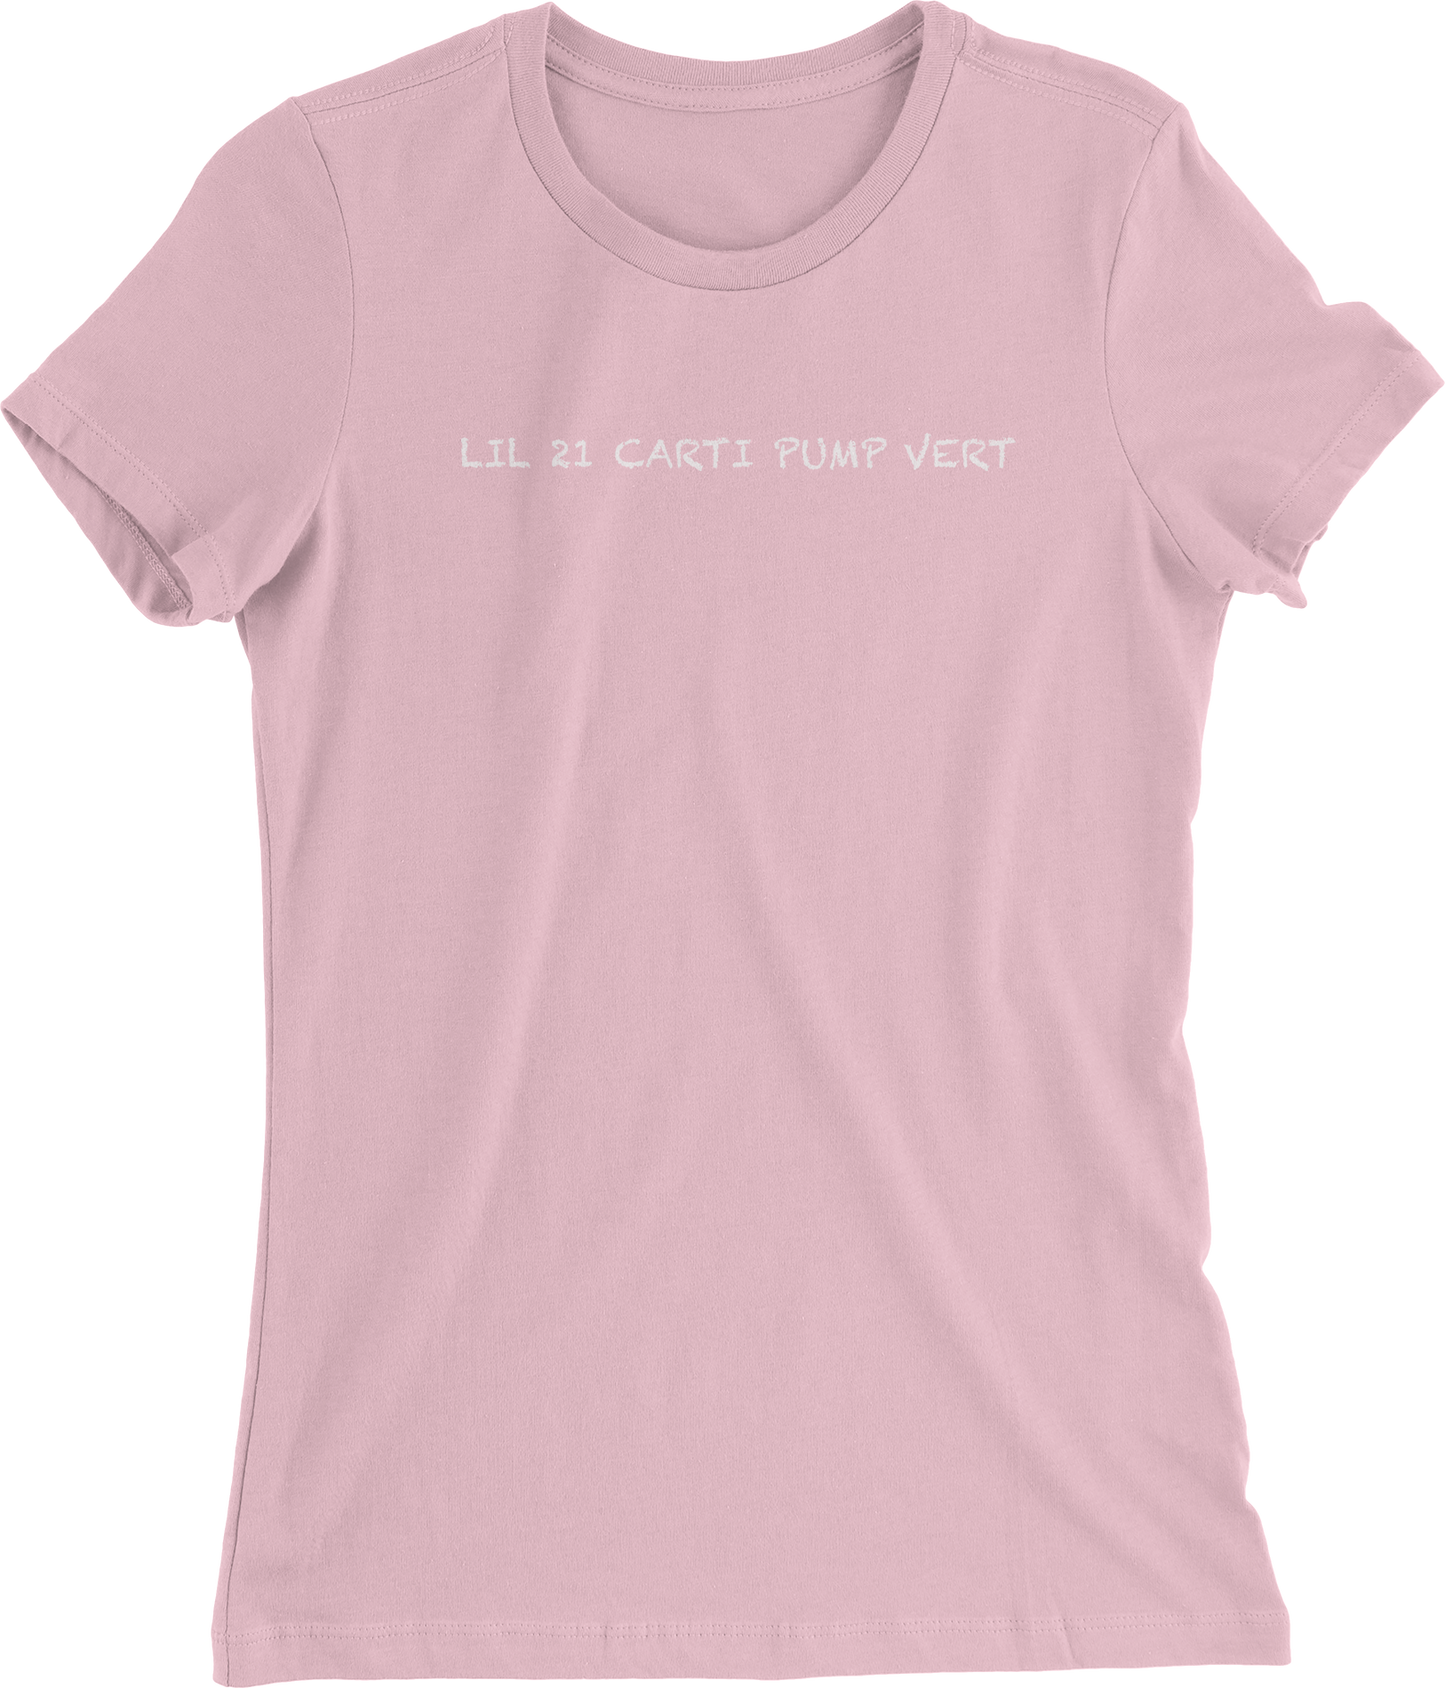 Lil 21 Carti Pump Vert Short Sleeve Women's T-shirt